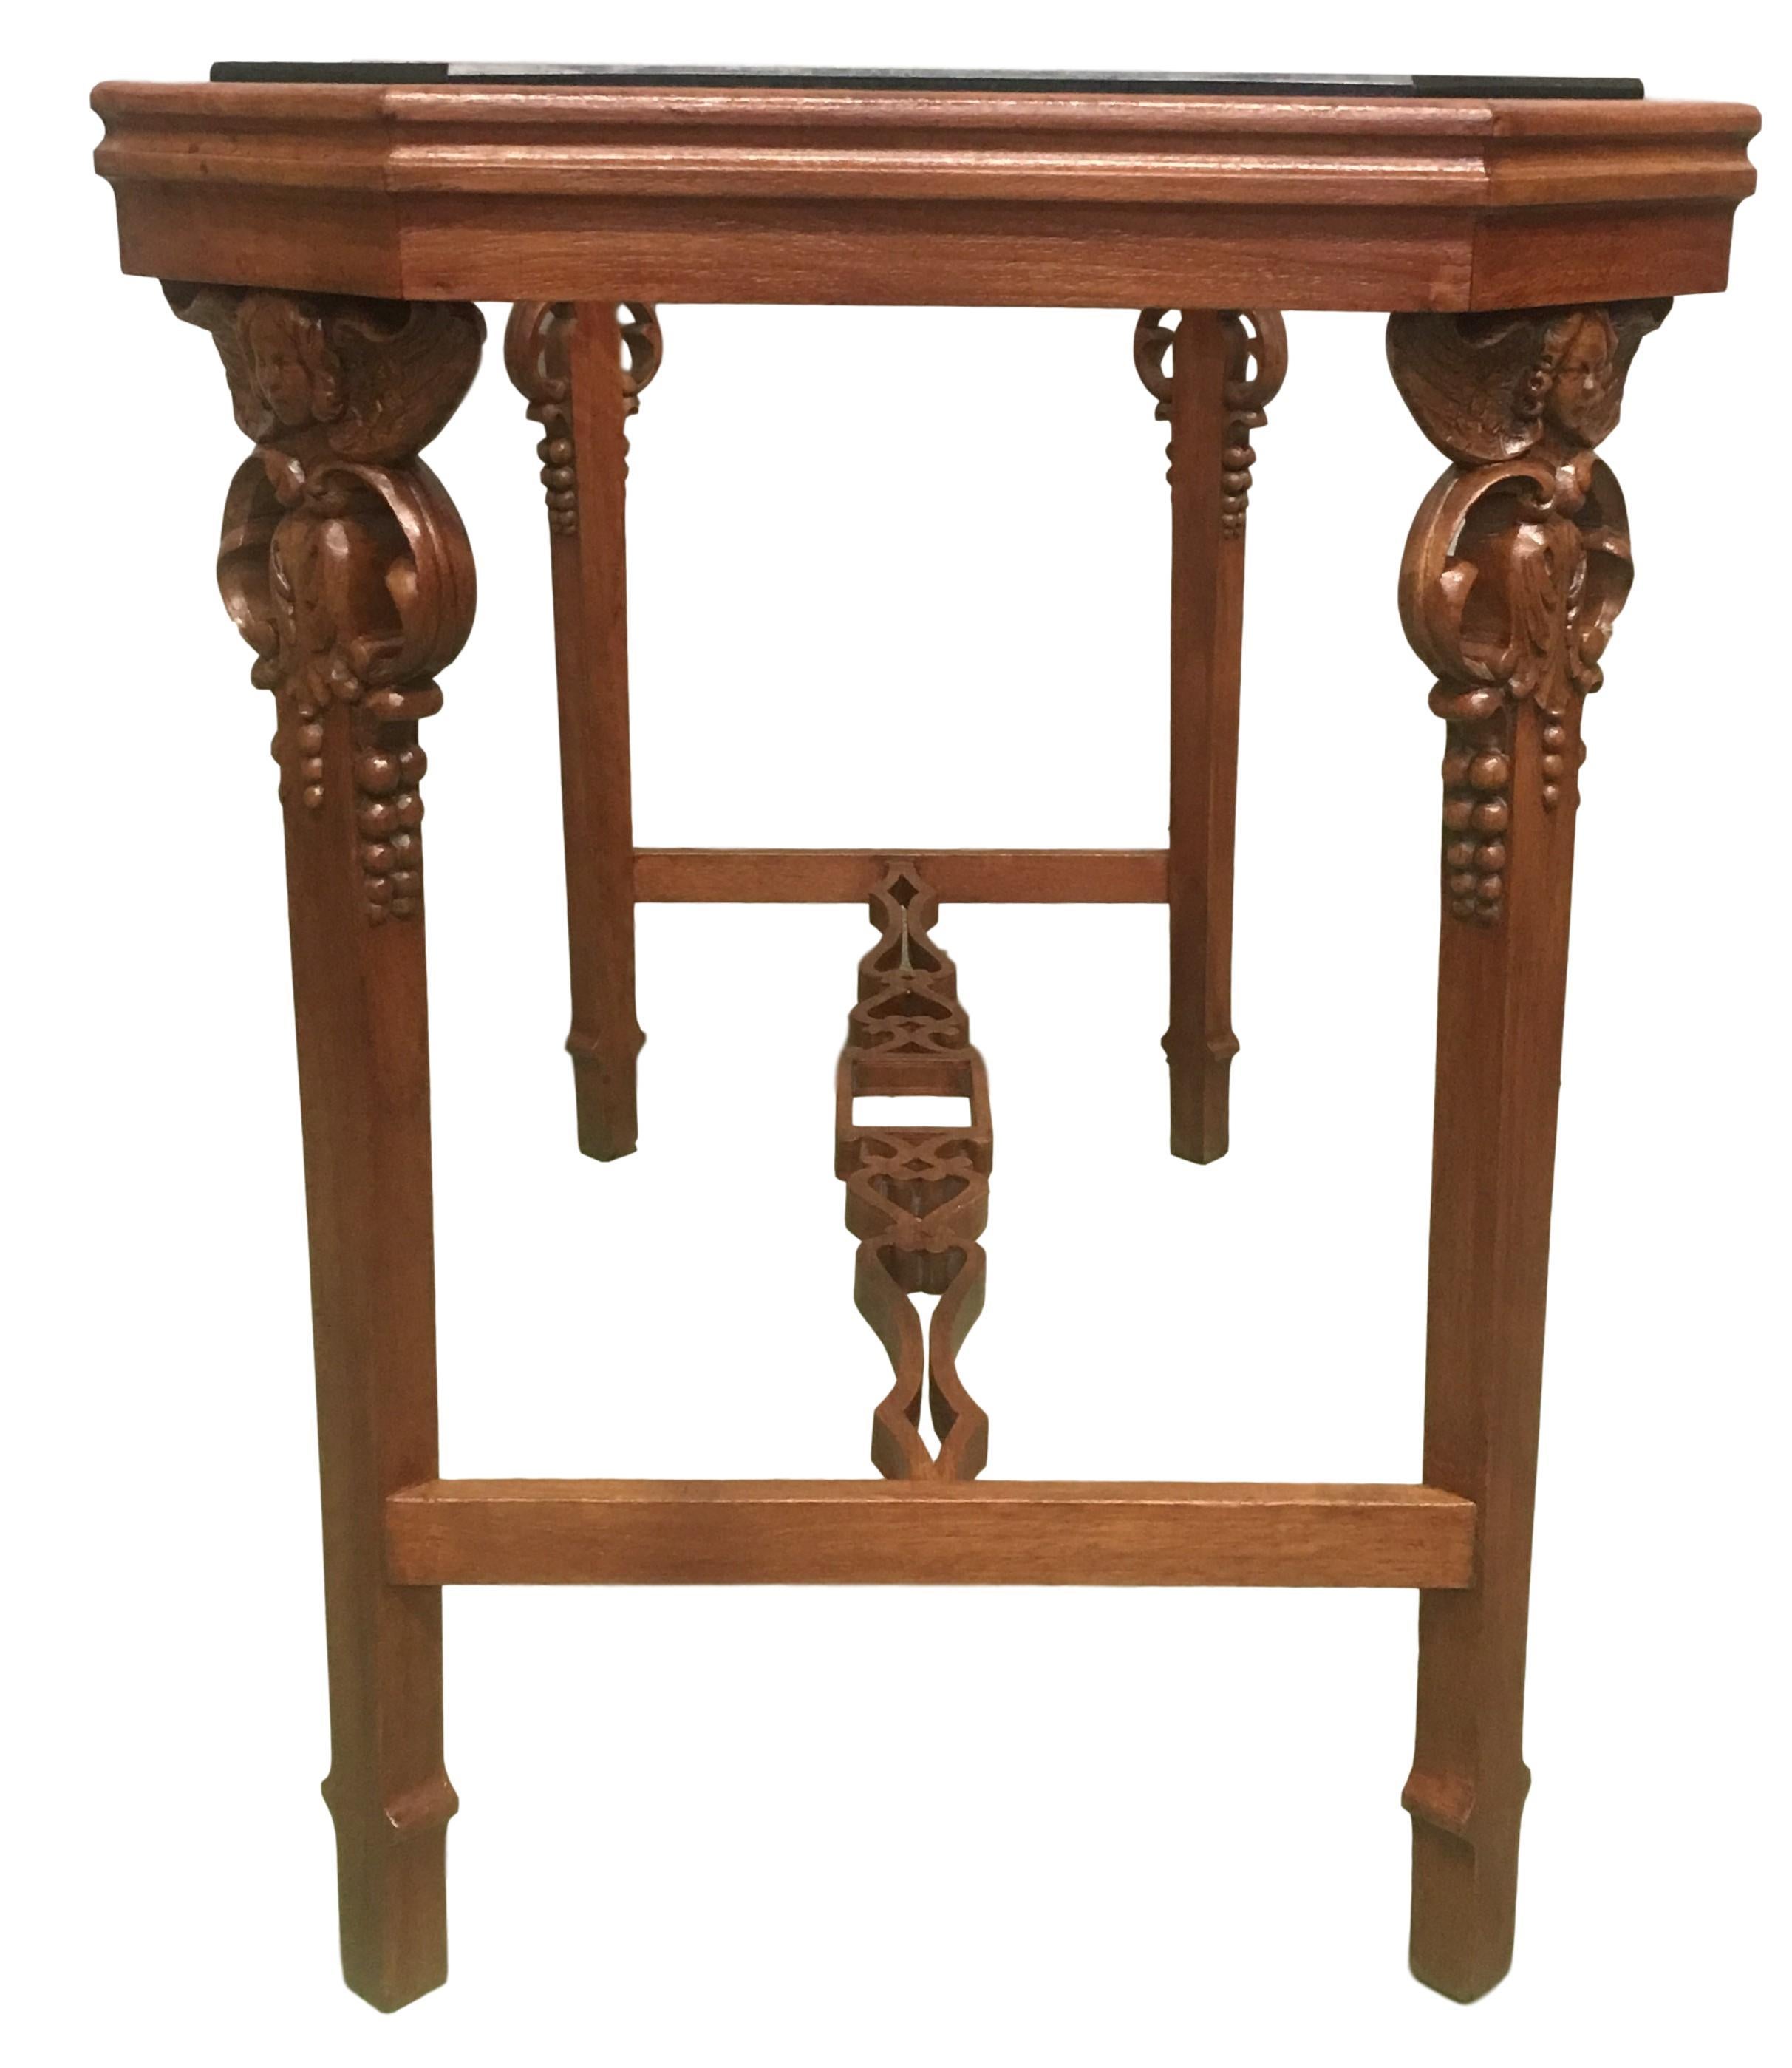 Englischer vierbeiniger Tisch aus der Jahrhundertwende mit einer schrägen Eckplatte und geschnitzten Cherubinen in den vier Beinen.